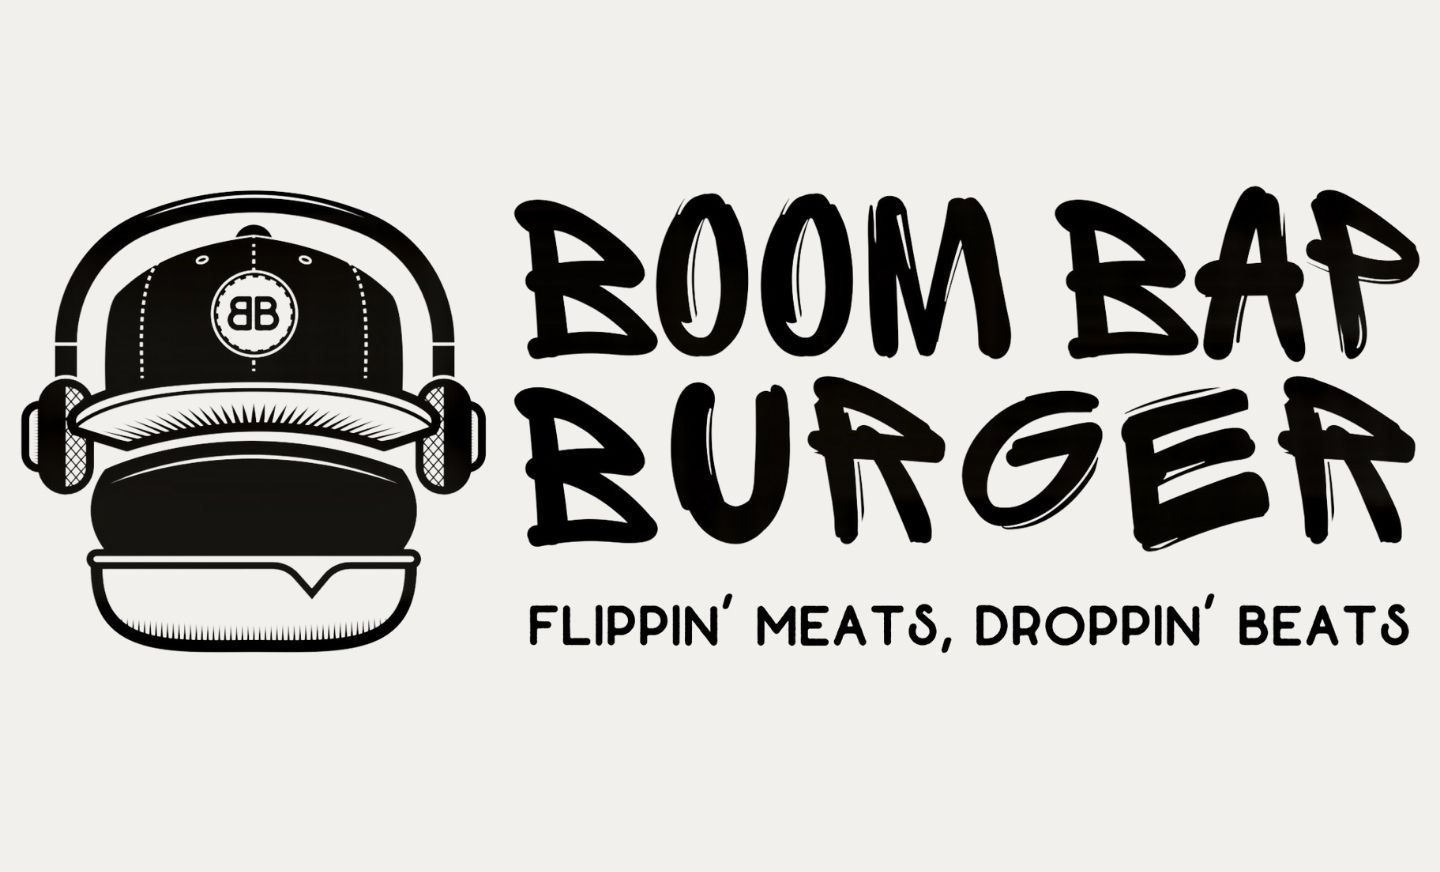 Boom Bap Burger